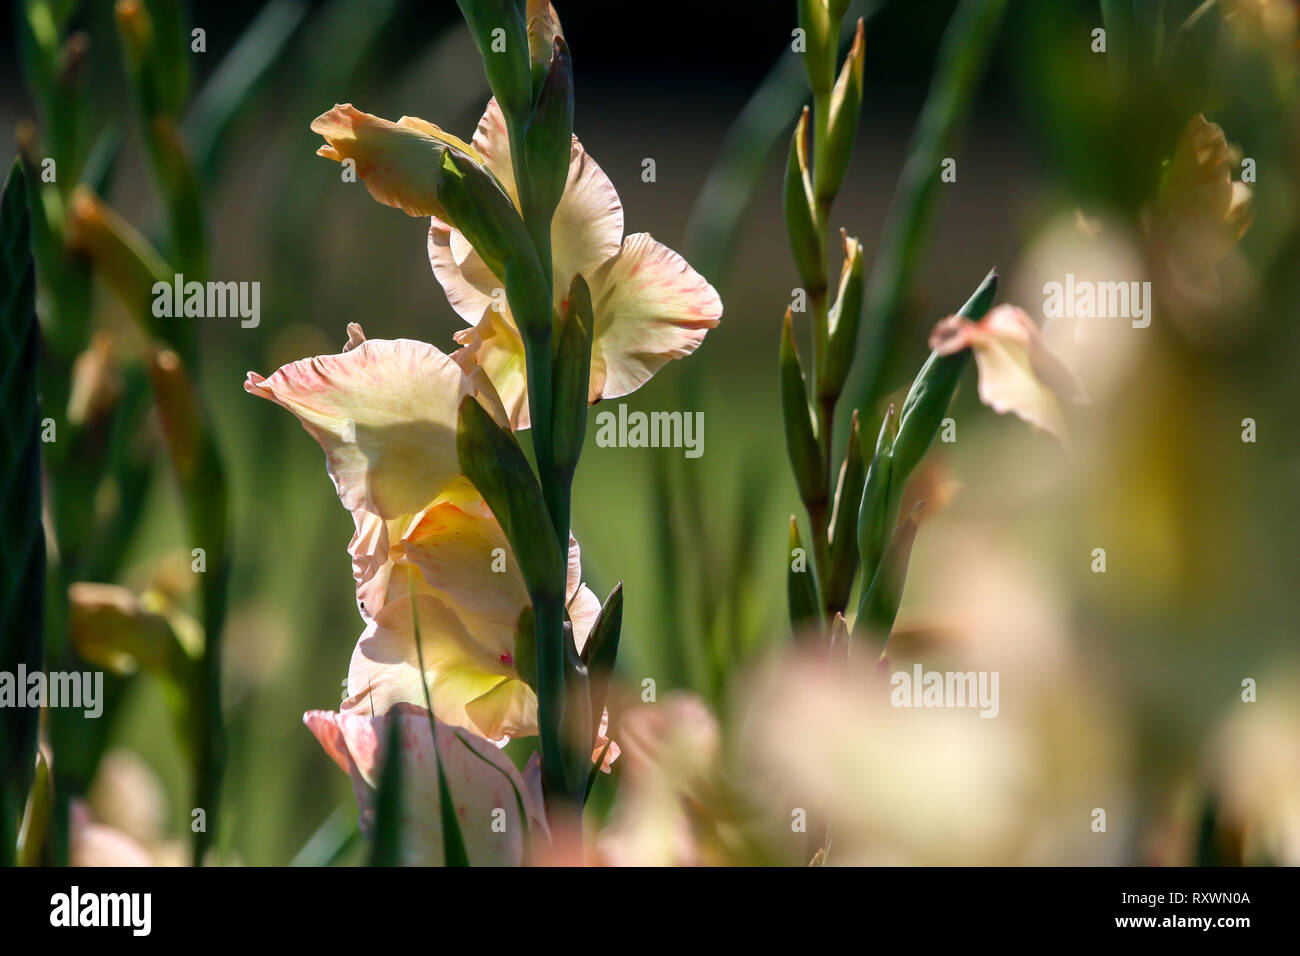 Rosa delicato gladiolus fiori che sbocciano nel bellissimo giardino. Gladiolus è pianta della famiglia di iris, con la spada a forma di foglie e punte di vivaci col Foto Stock